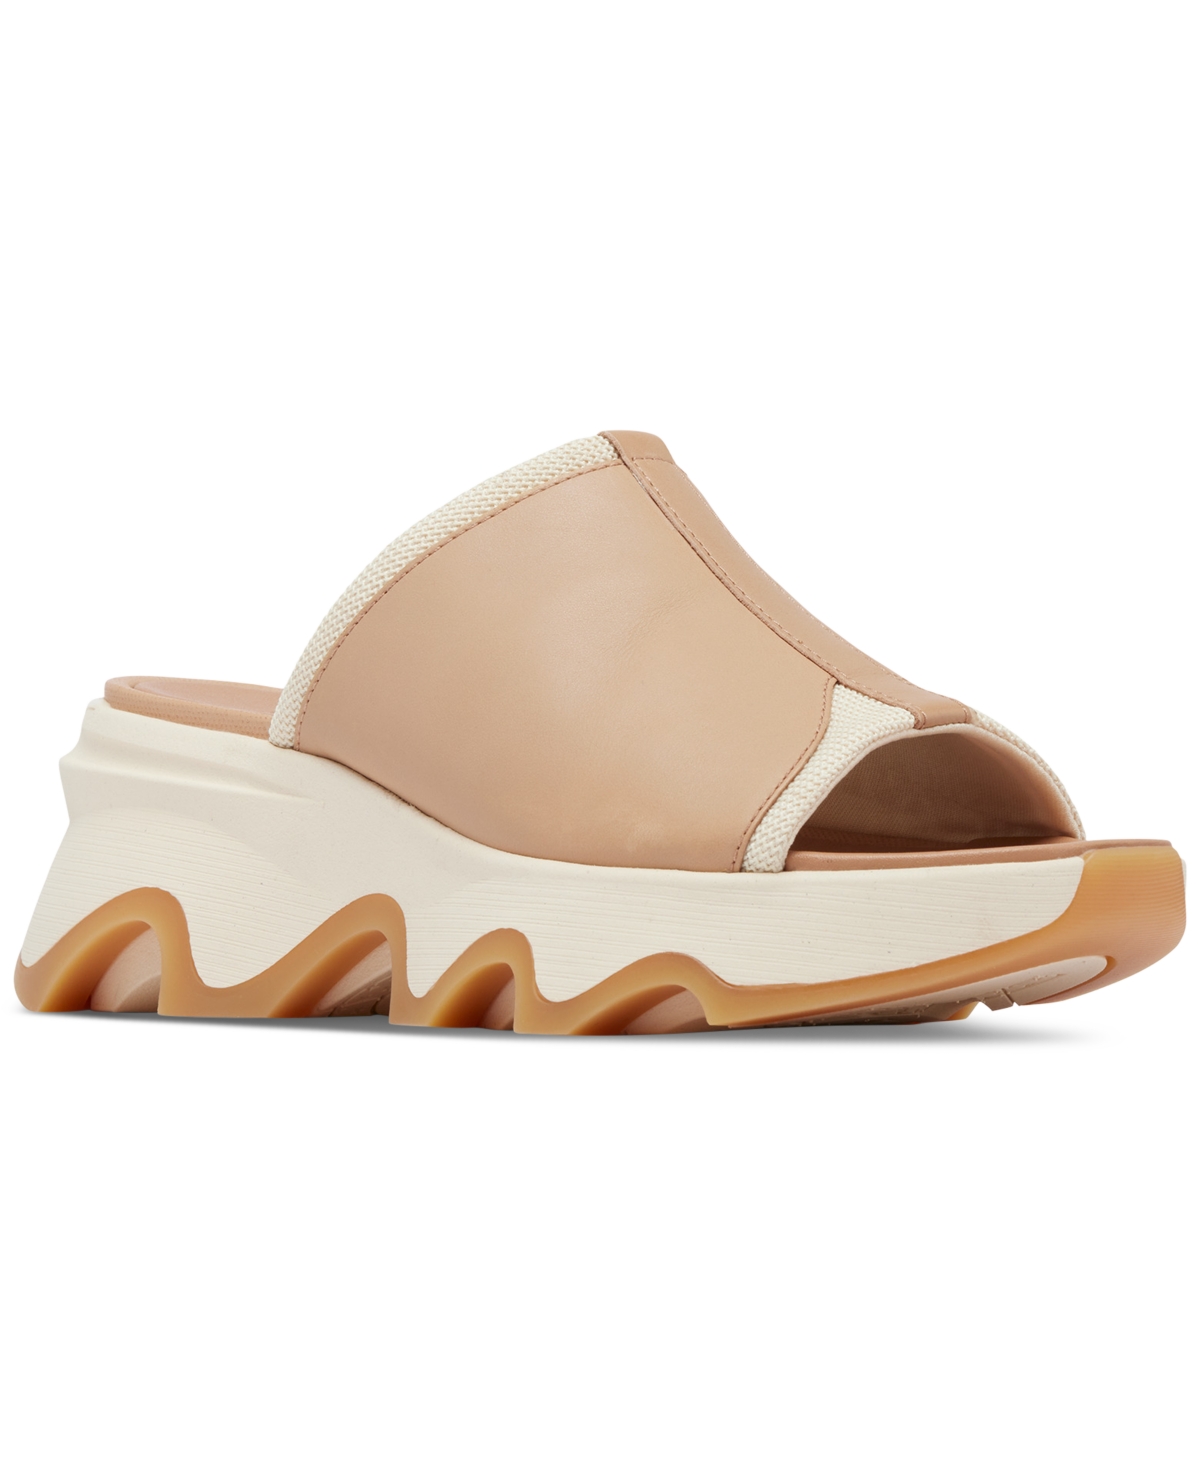 Women's Kinetic Impact Slip-On Wedge Slide Sandals - Optimized Orange, Honey White